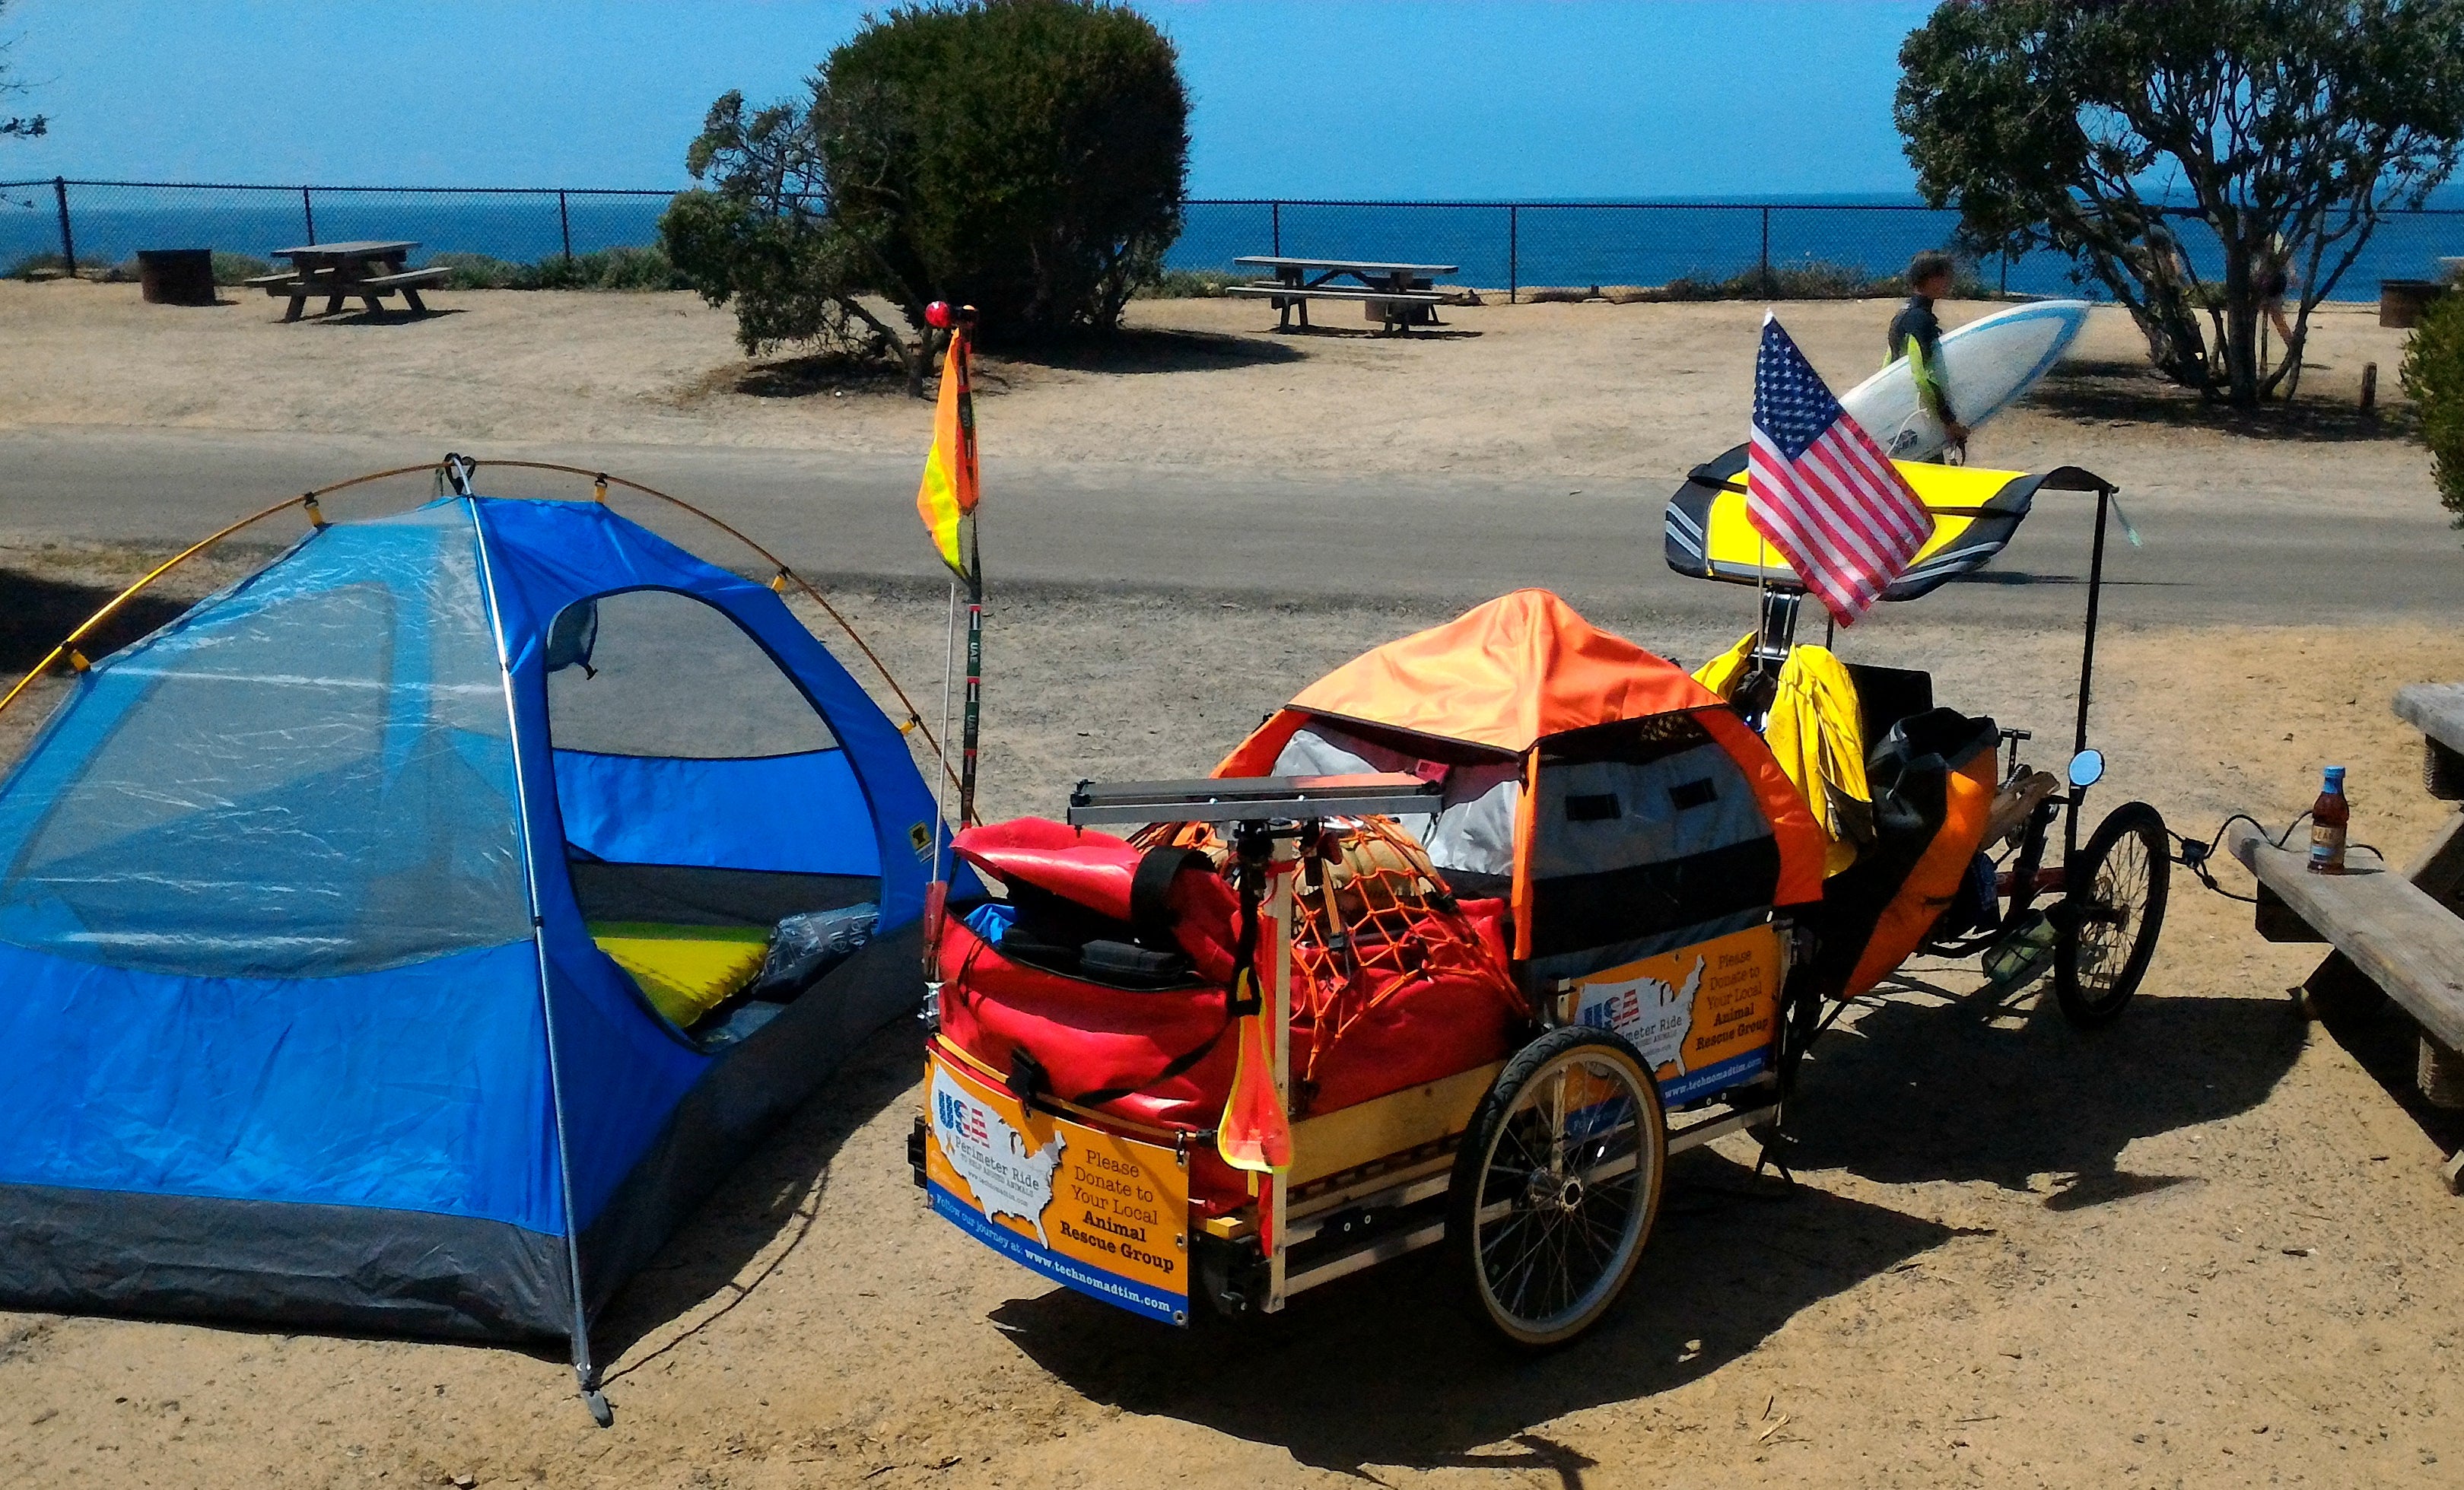 Simple campsite near the ocean